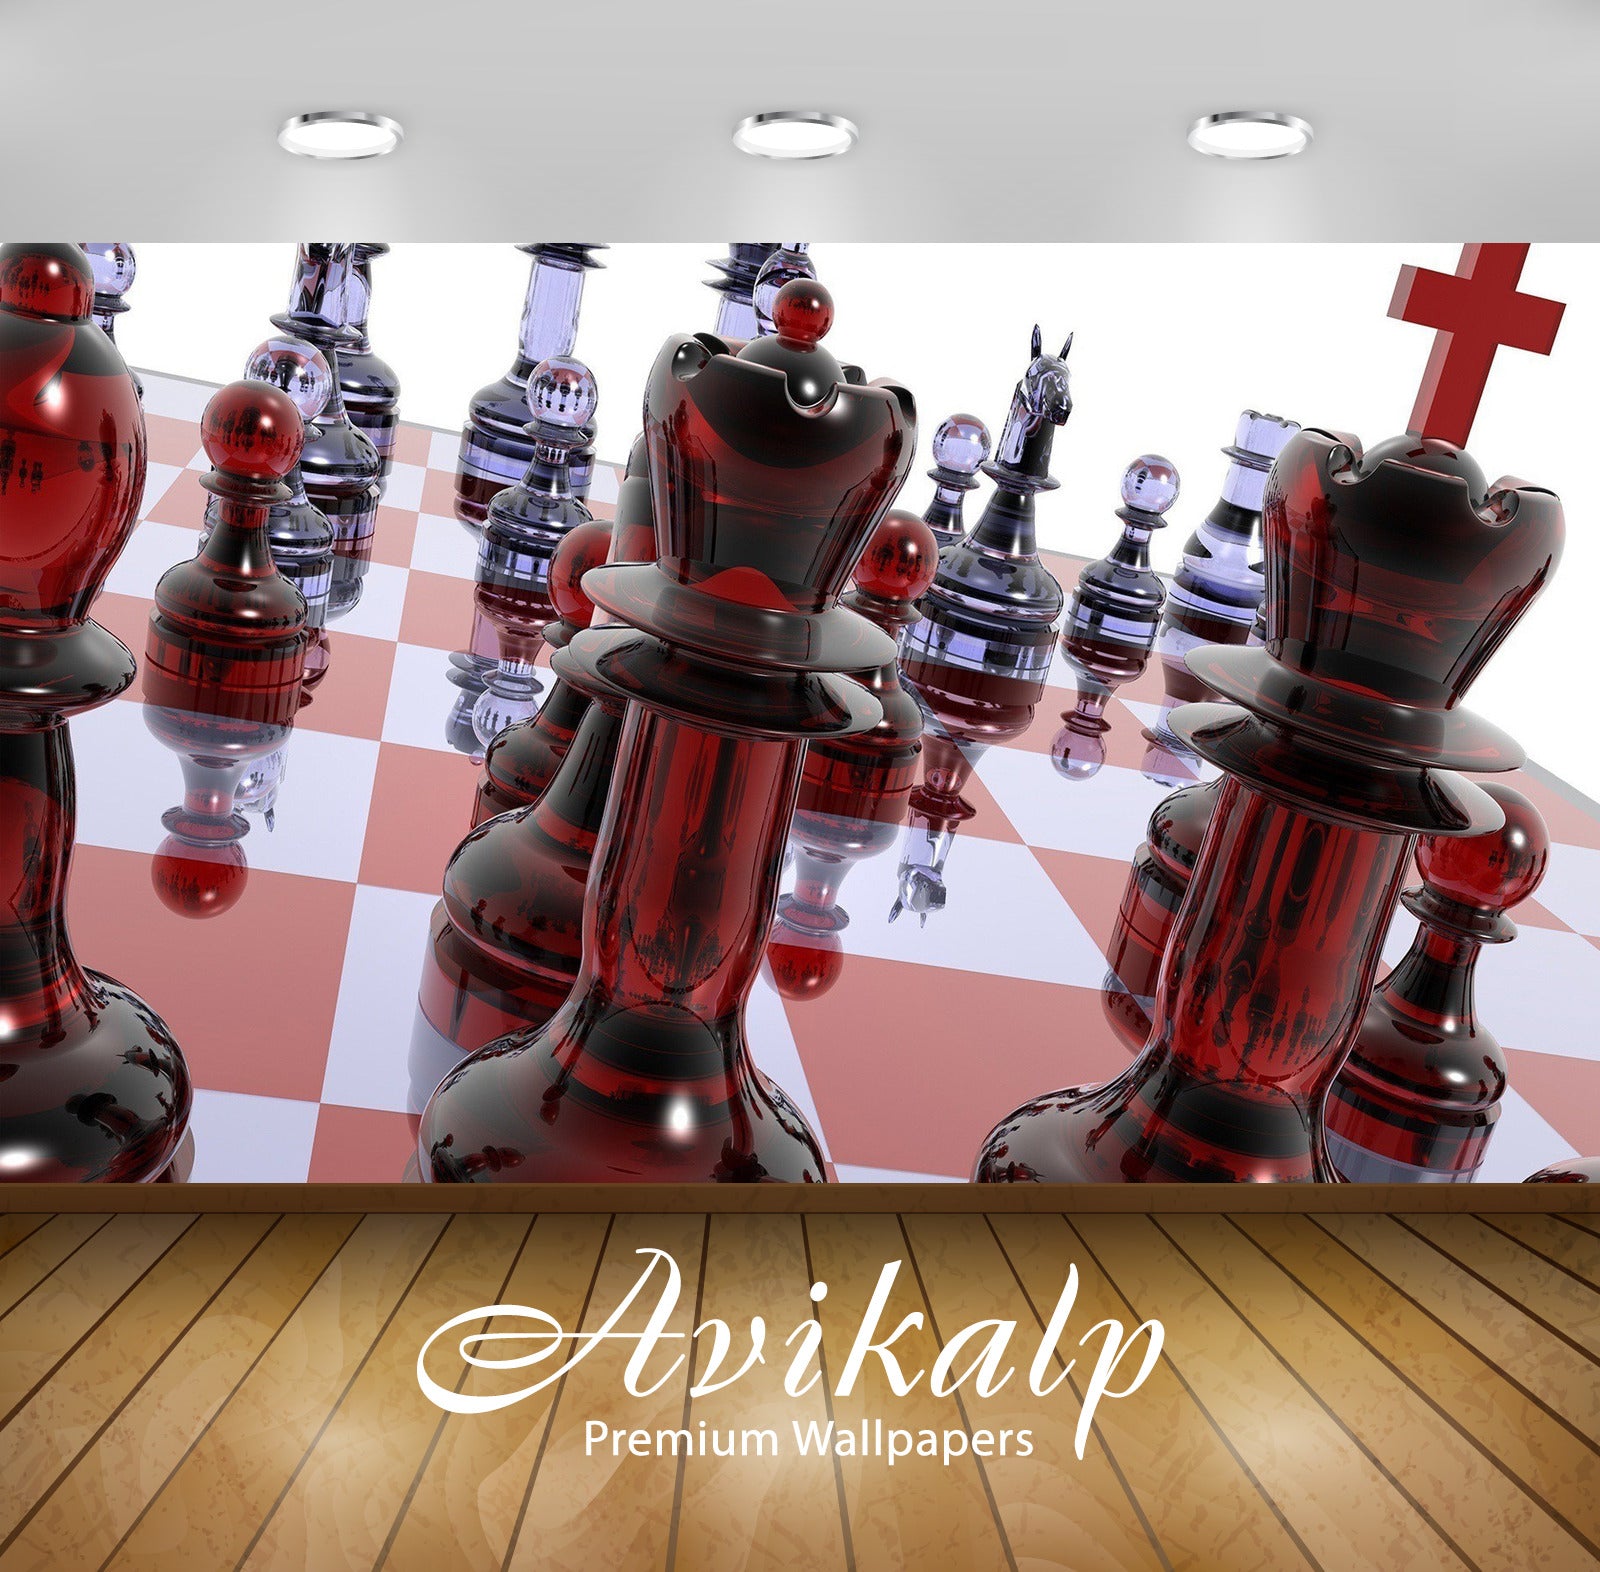 Chess Board 3D Desktop HD Wallpapers